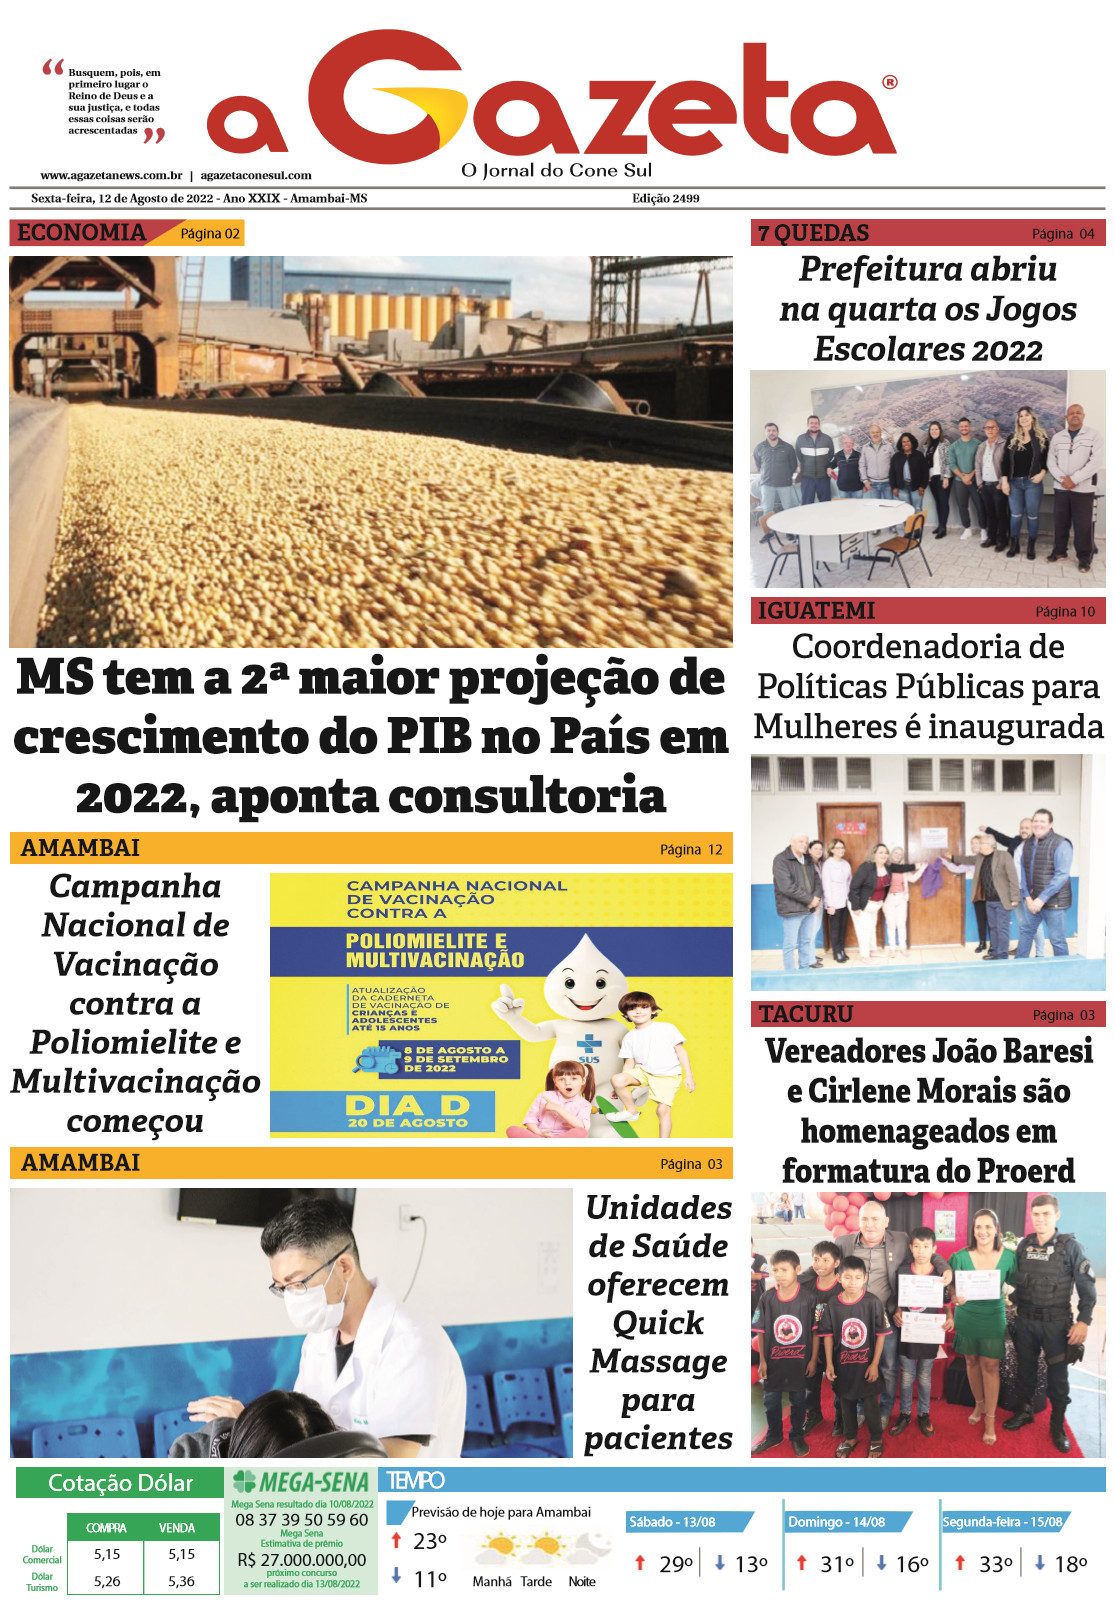 Confira a edição digital do jornal impresso A Gazeta desta sexta-feira, dia 12